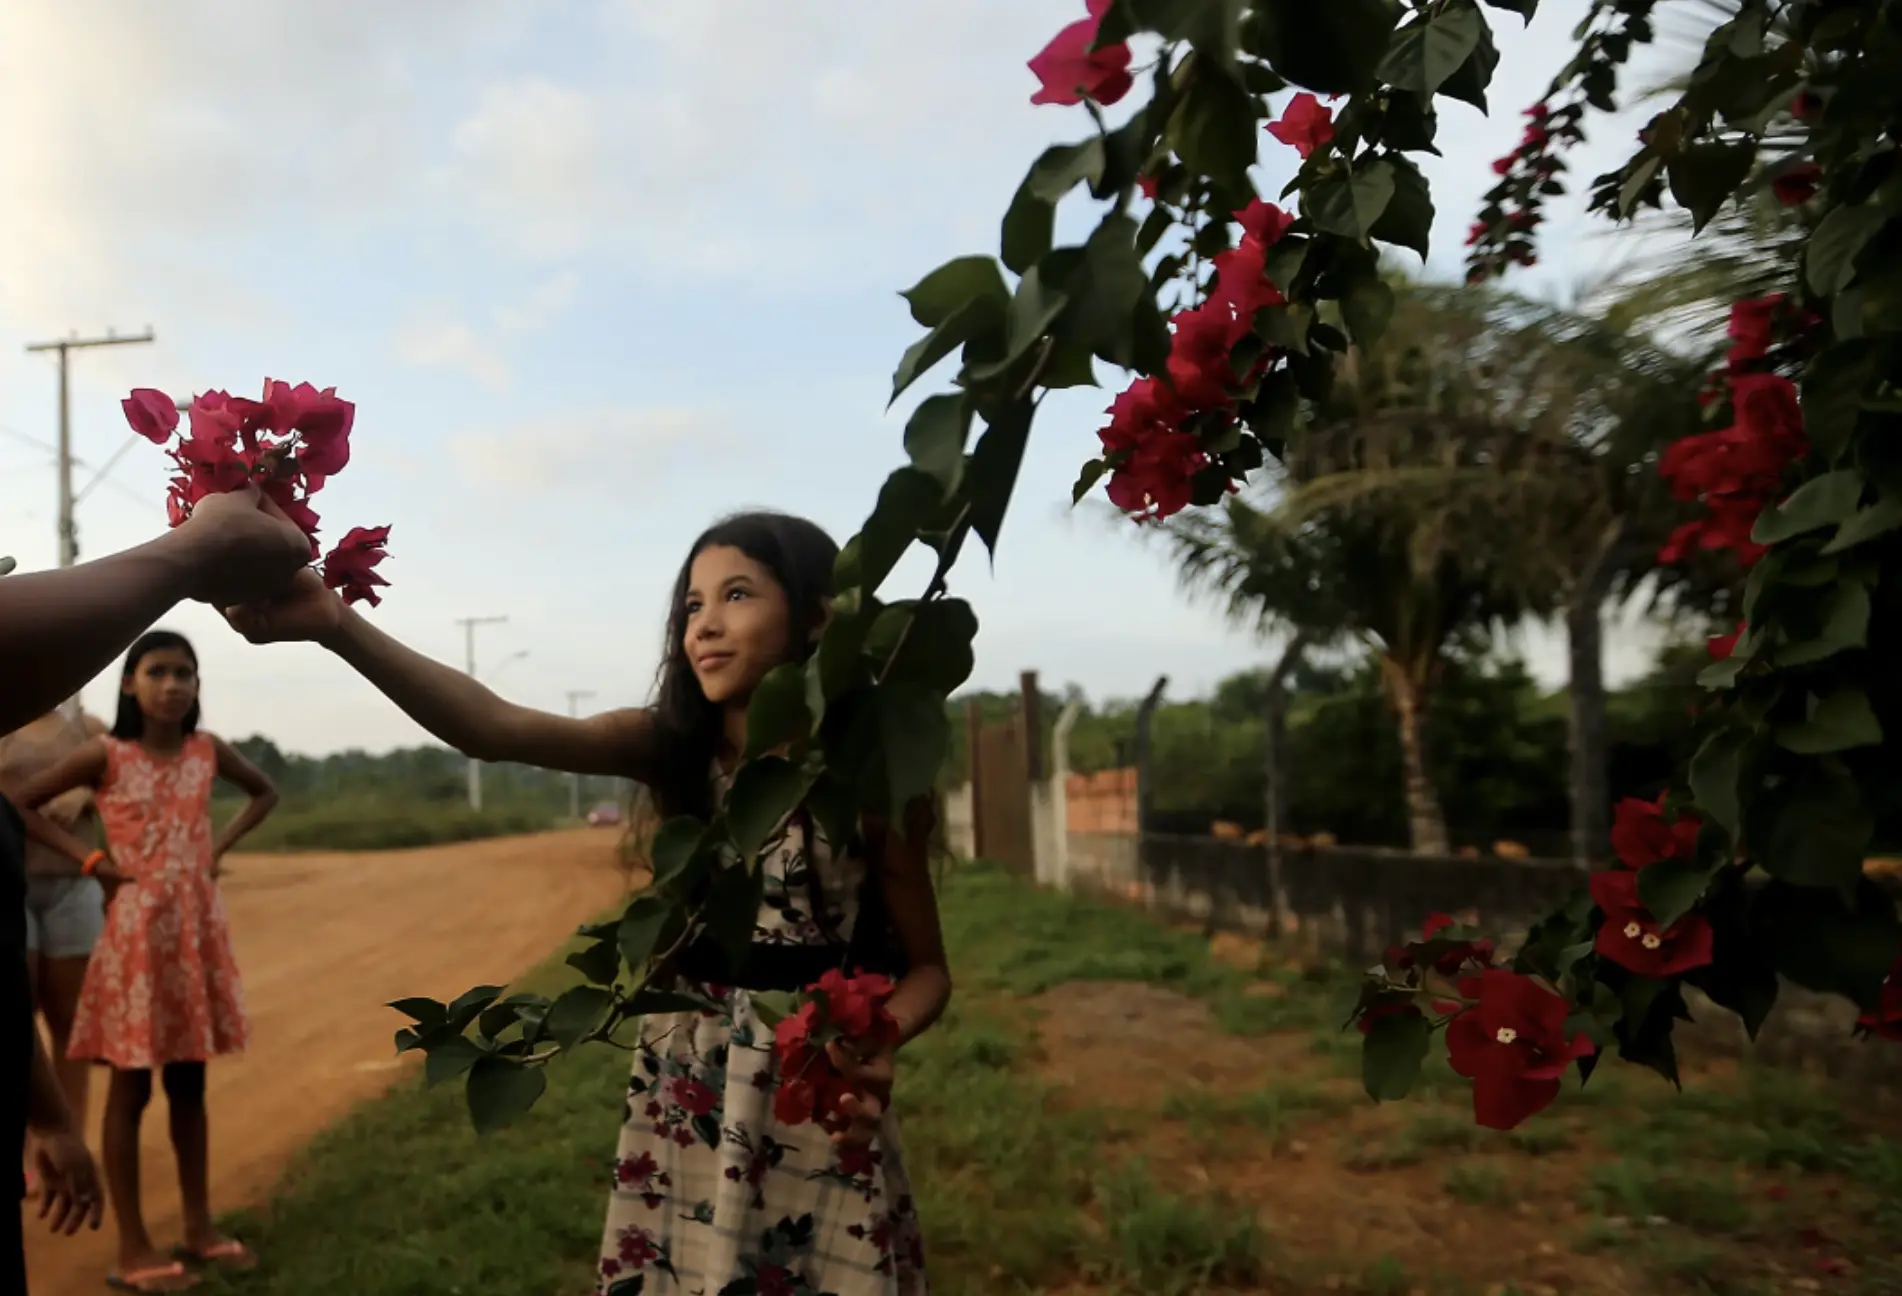 Darah Lady Assunção Oliveira da Costa, 10, picks flowers near her hom